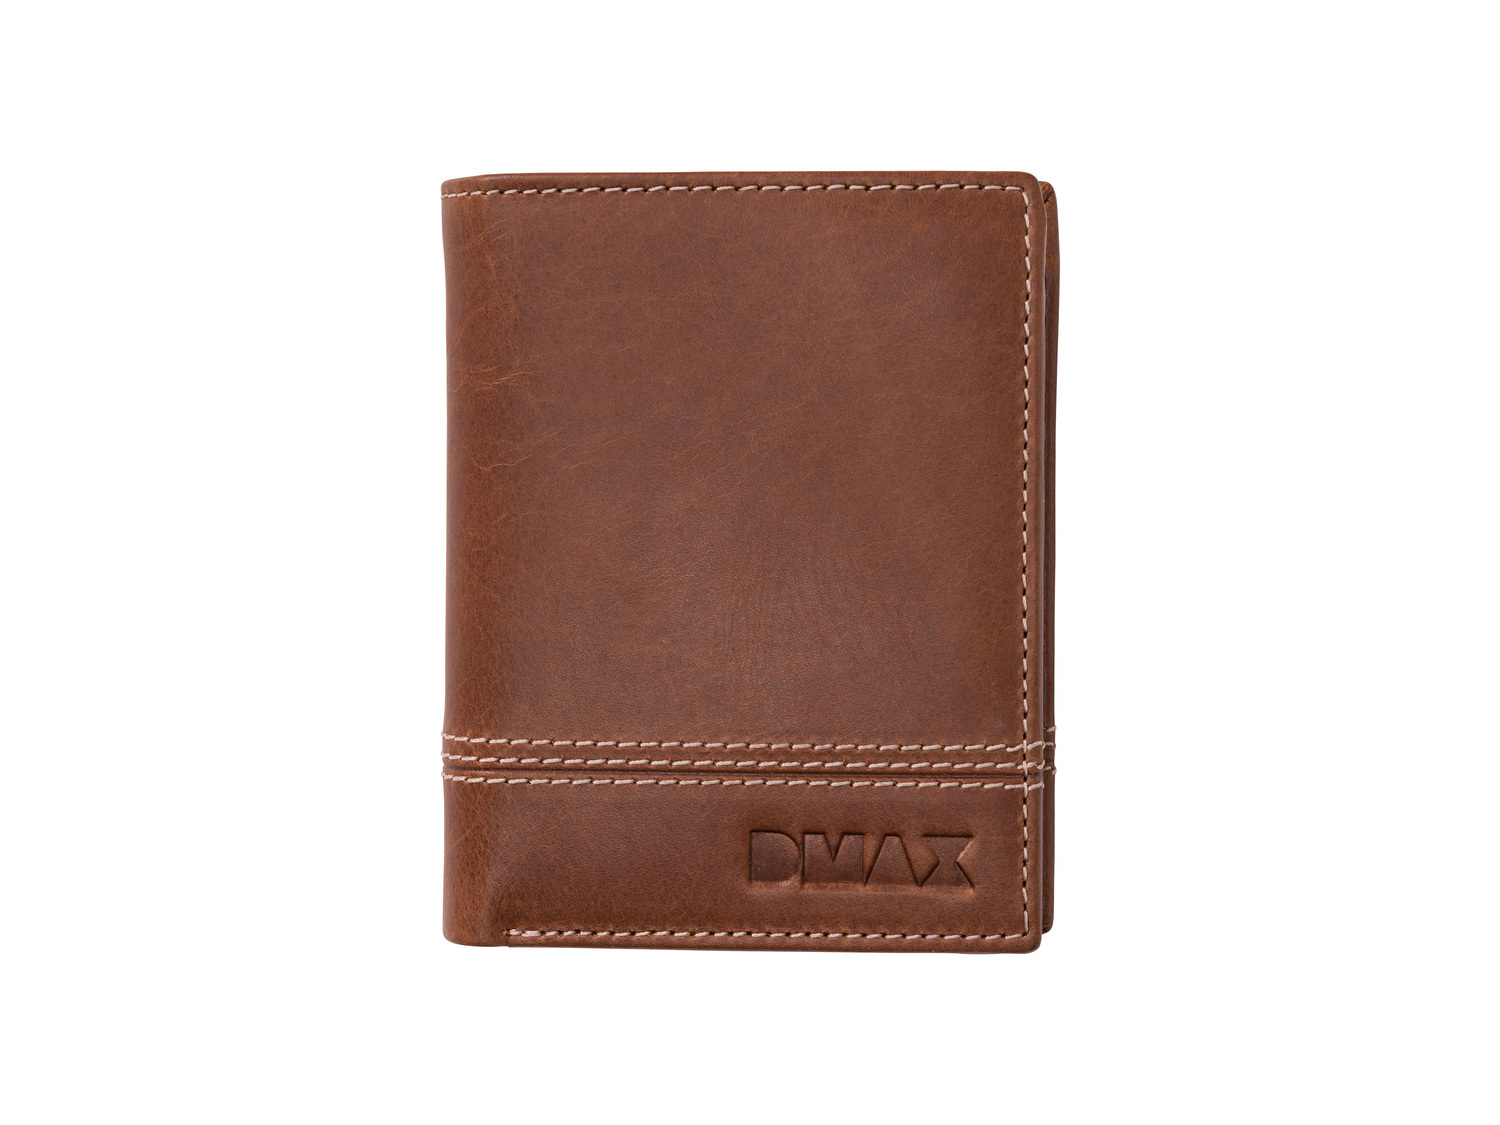 Portafoglio DMAX Dmax, prezzo 9.99 €  
In cuoio
Caratteristiche